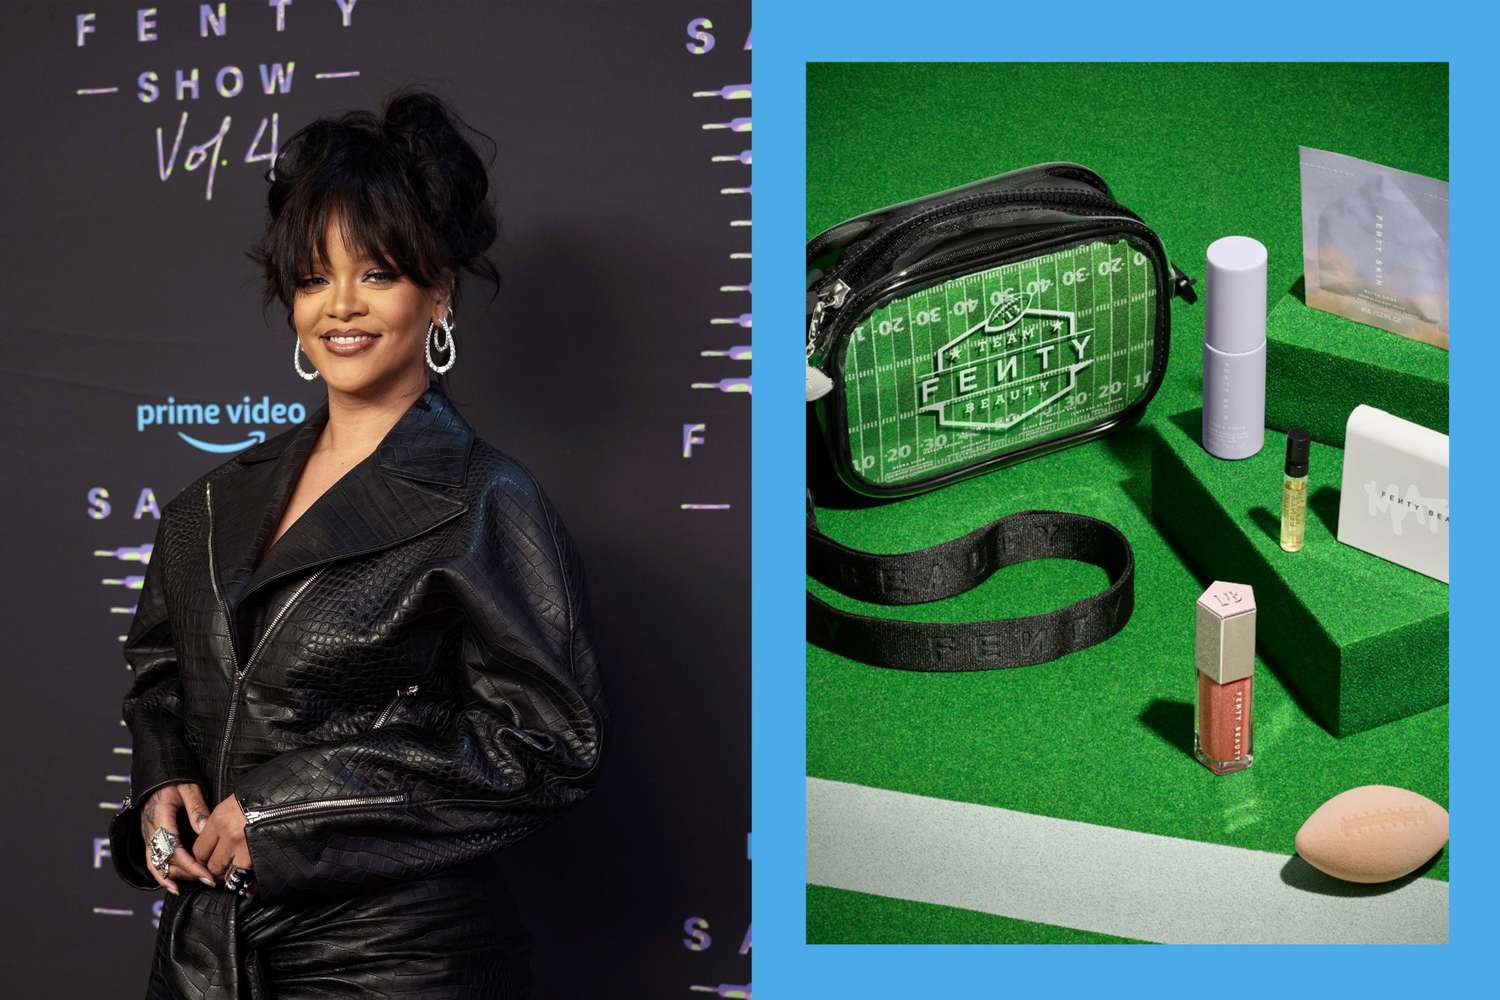 Atterrissage! Le nouveau kit de beauté Fenty approuvé par le stade de Rihanna est livré avec une éponge de maquillage de football